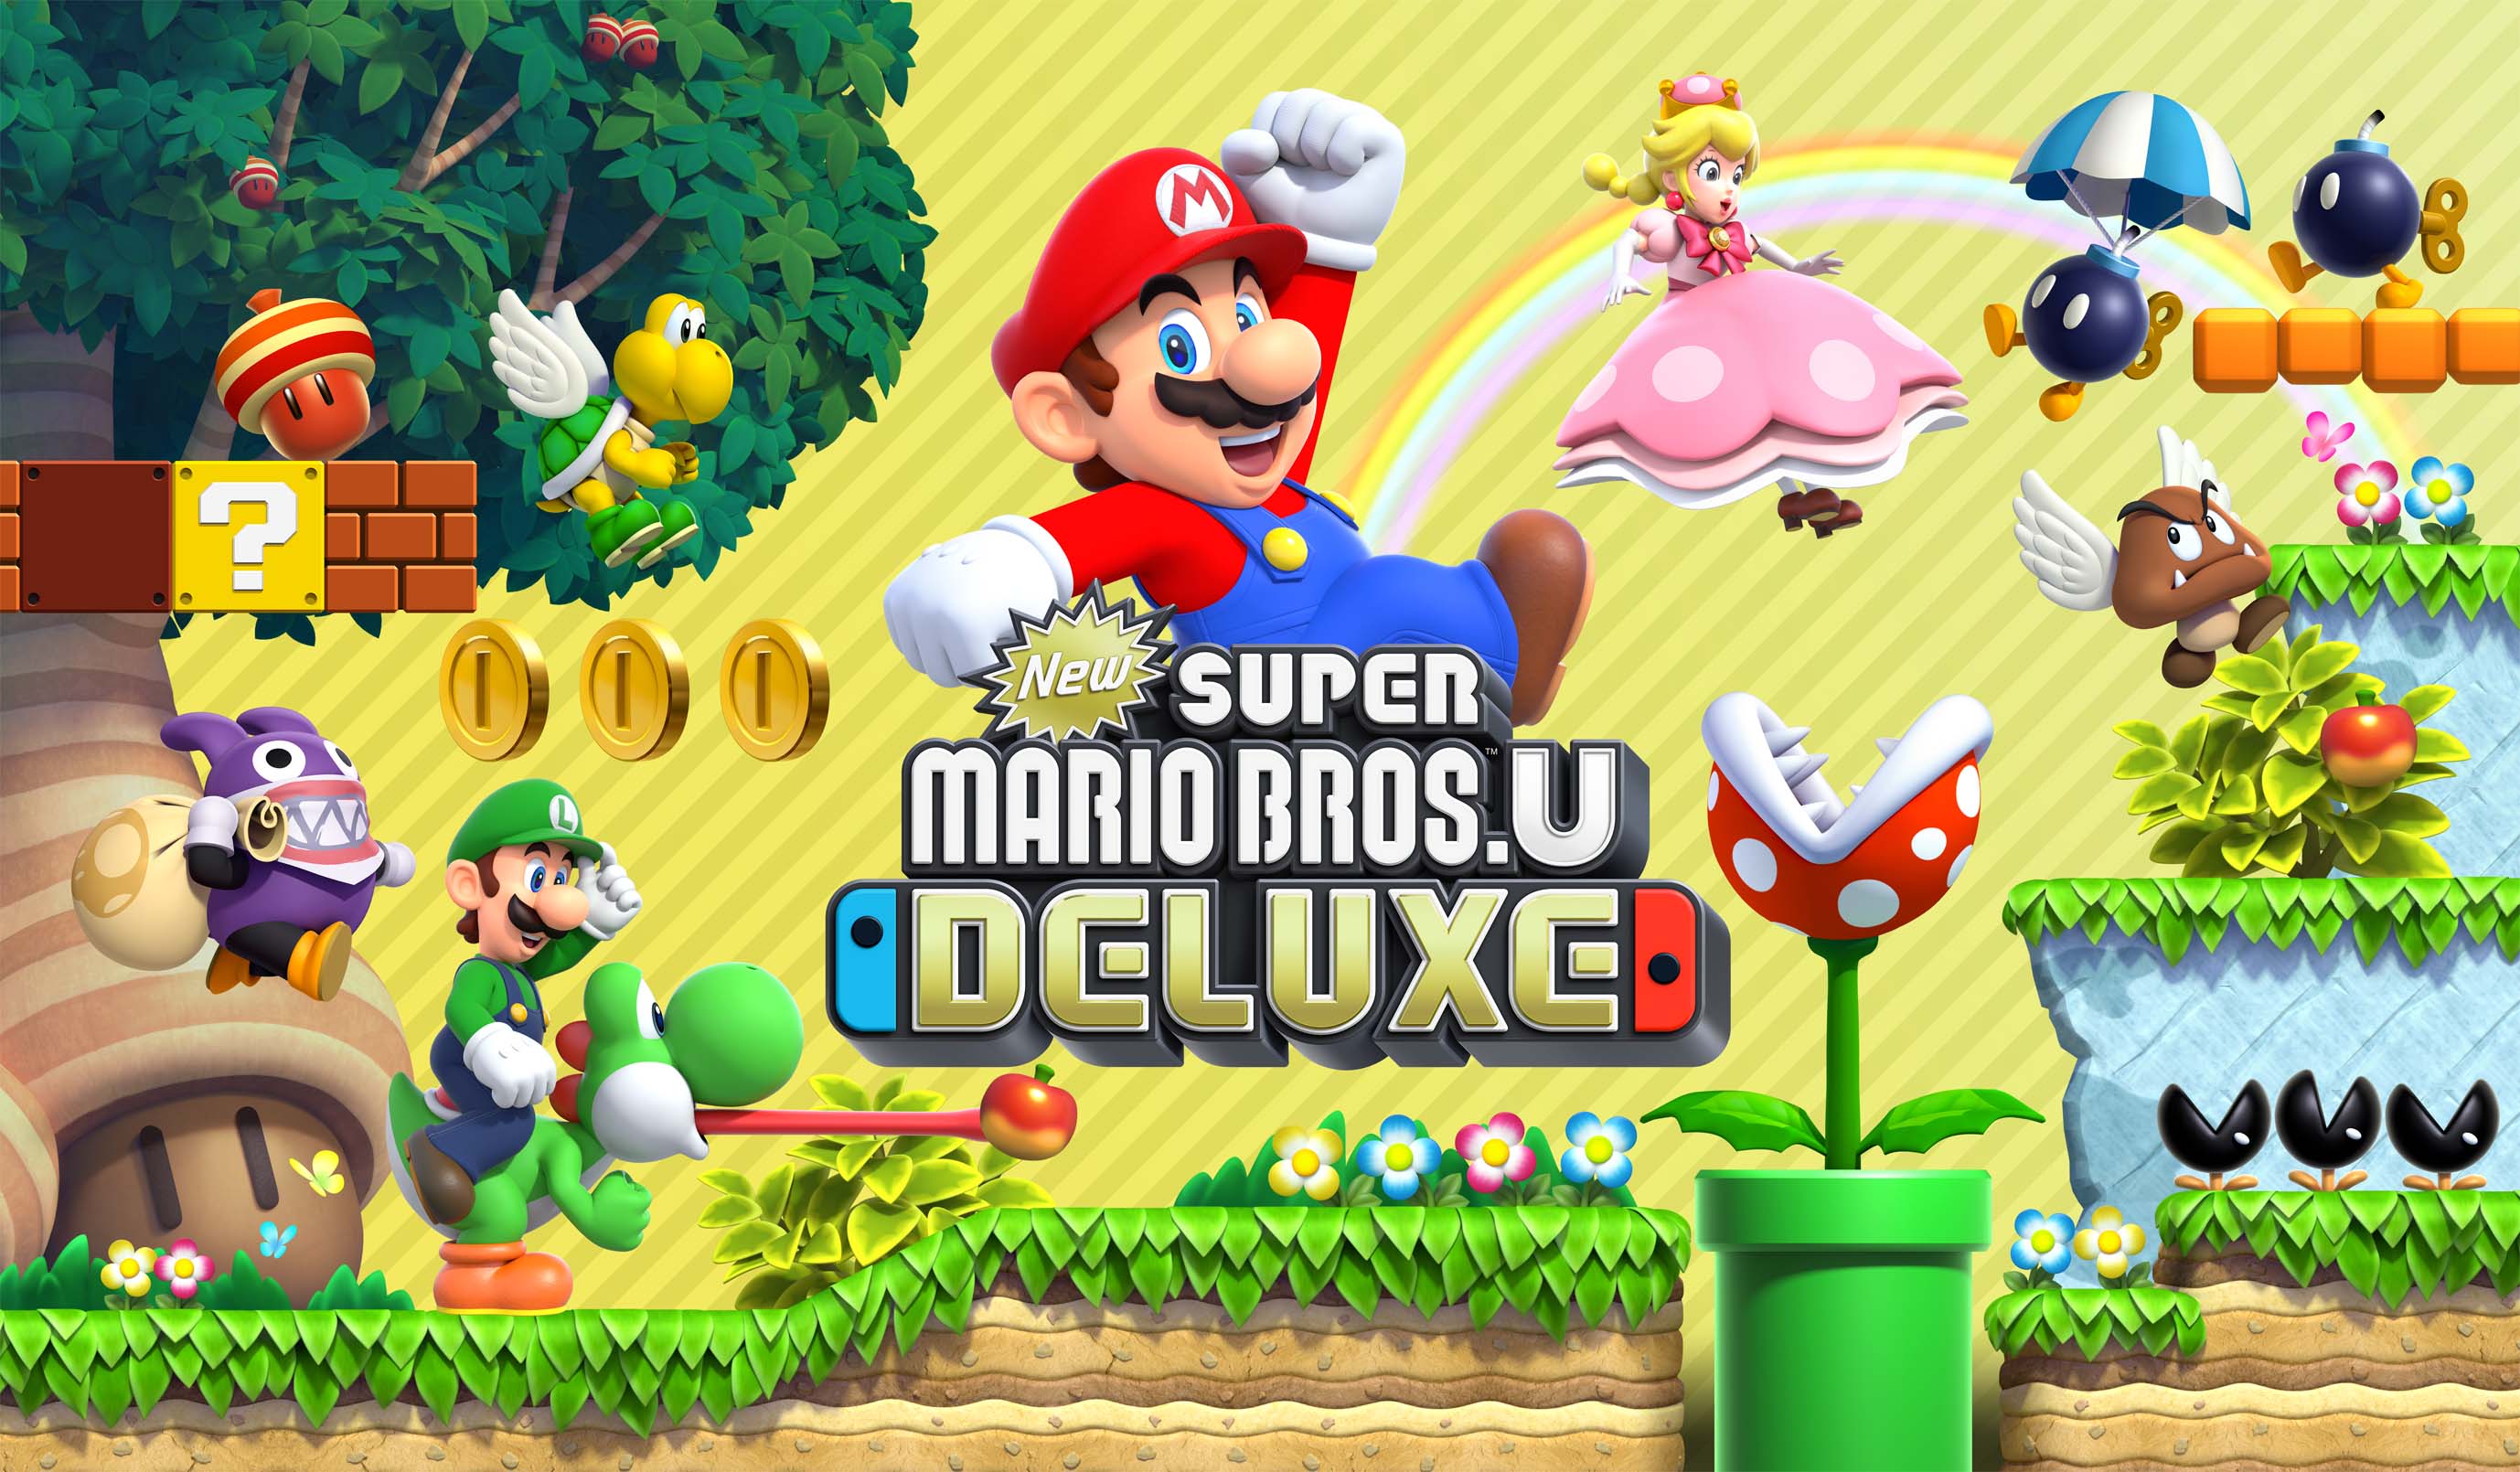 Super Mario 3D World e novo Smash Bros. são revelados pela Nintendo na E3  2013